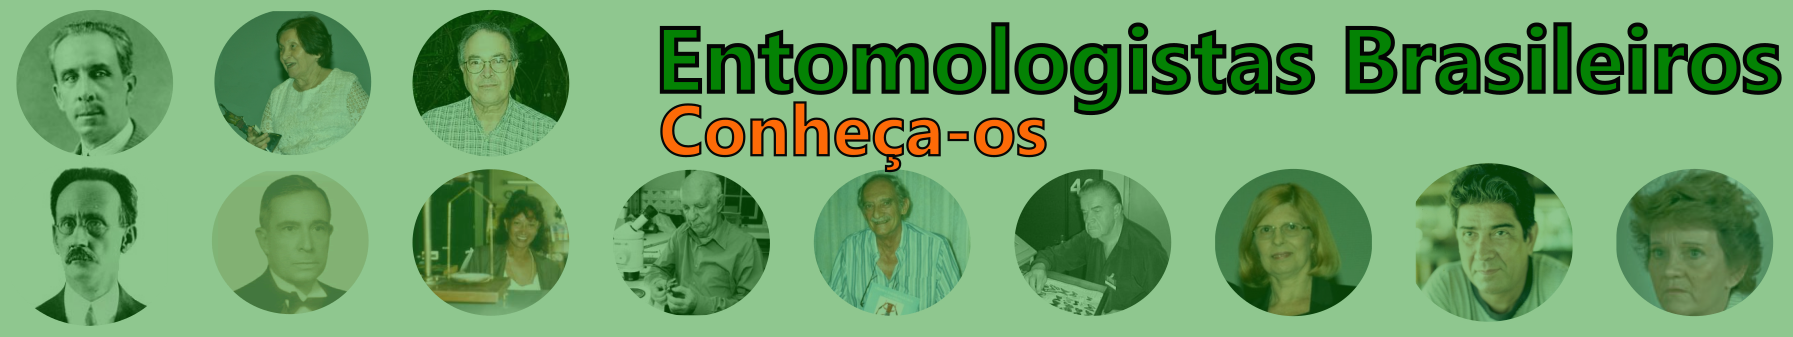 Entomologistas Brasileiros